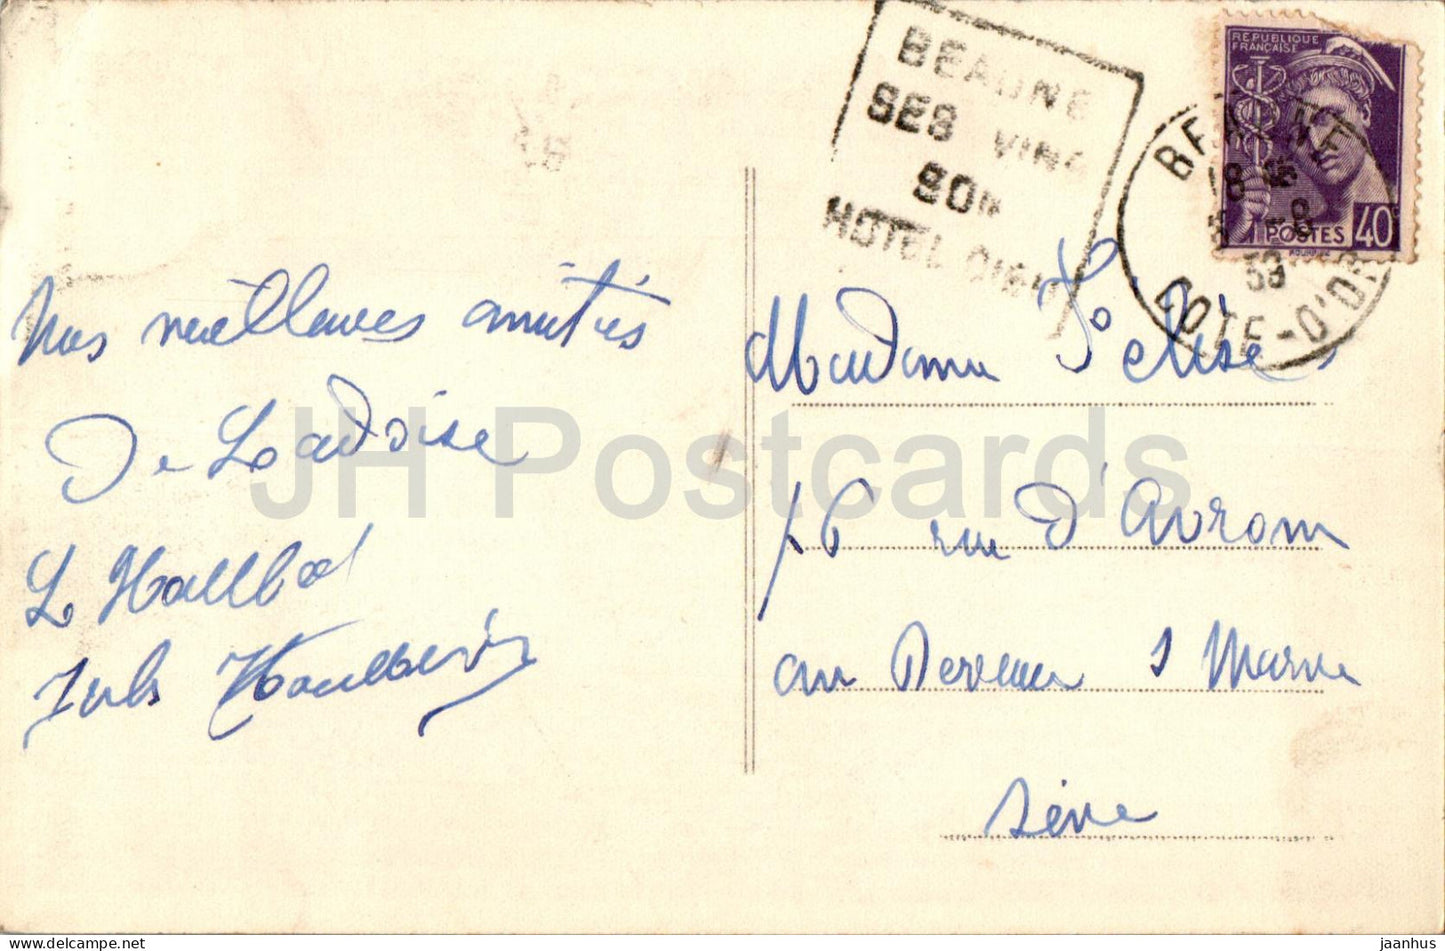 Beaune - Hotel Dieu - La Cour d'Honneur - alte Postkarte - 1939 - Frankreich - gebraucht 